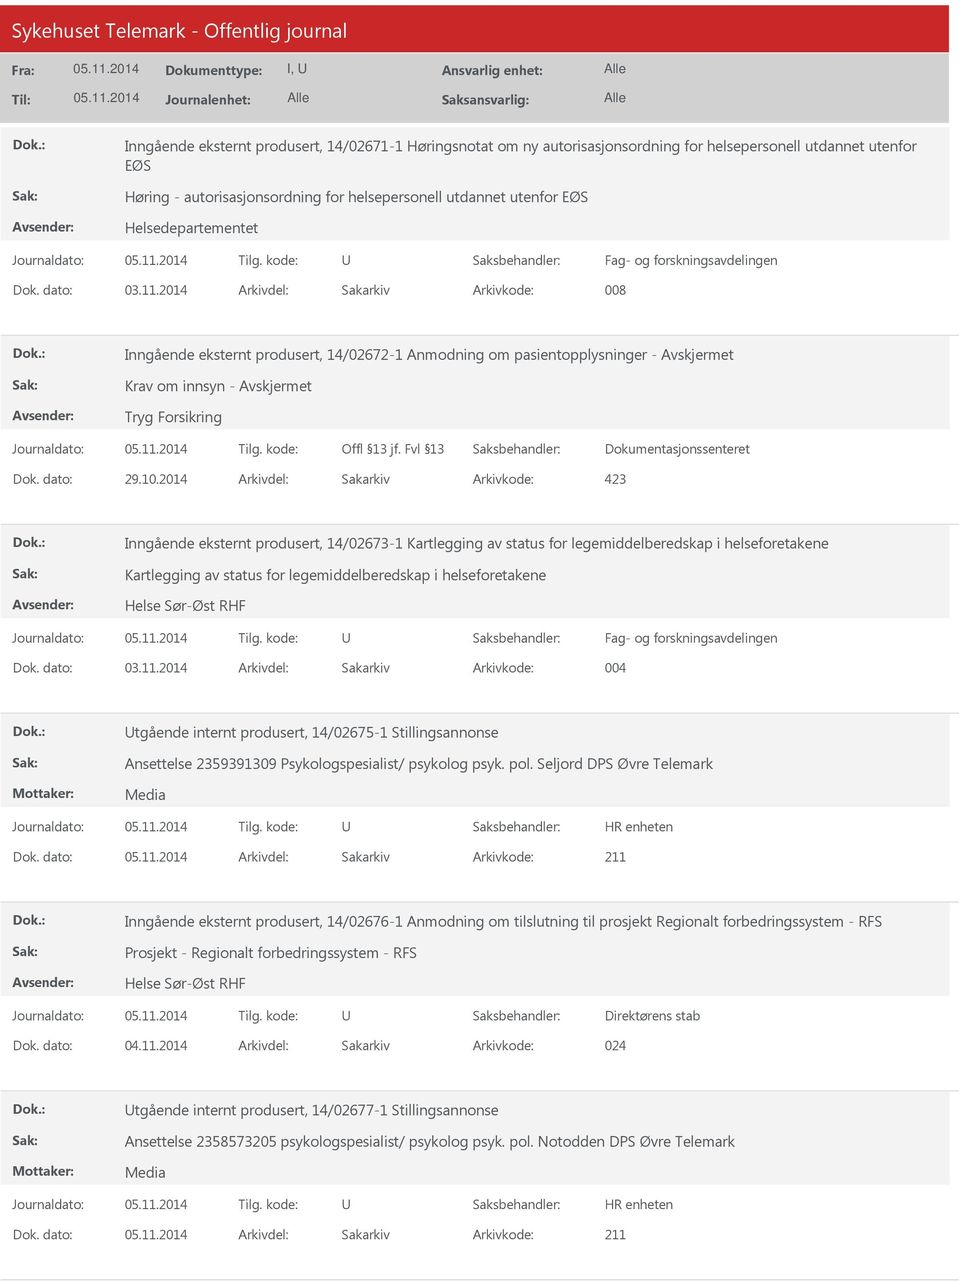 2014 Arkivdel: Sakarkiv Inngående eksternt produsert, 14/02673-1 Kartlegging av status for legemiddelberedskap i helseforetakene Kartlegging av status for legemiddelberedskap i helseforetakene